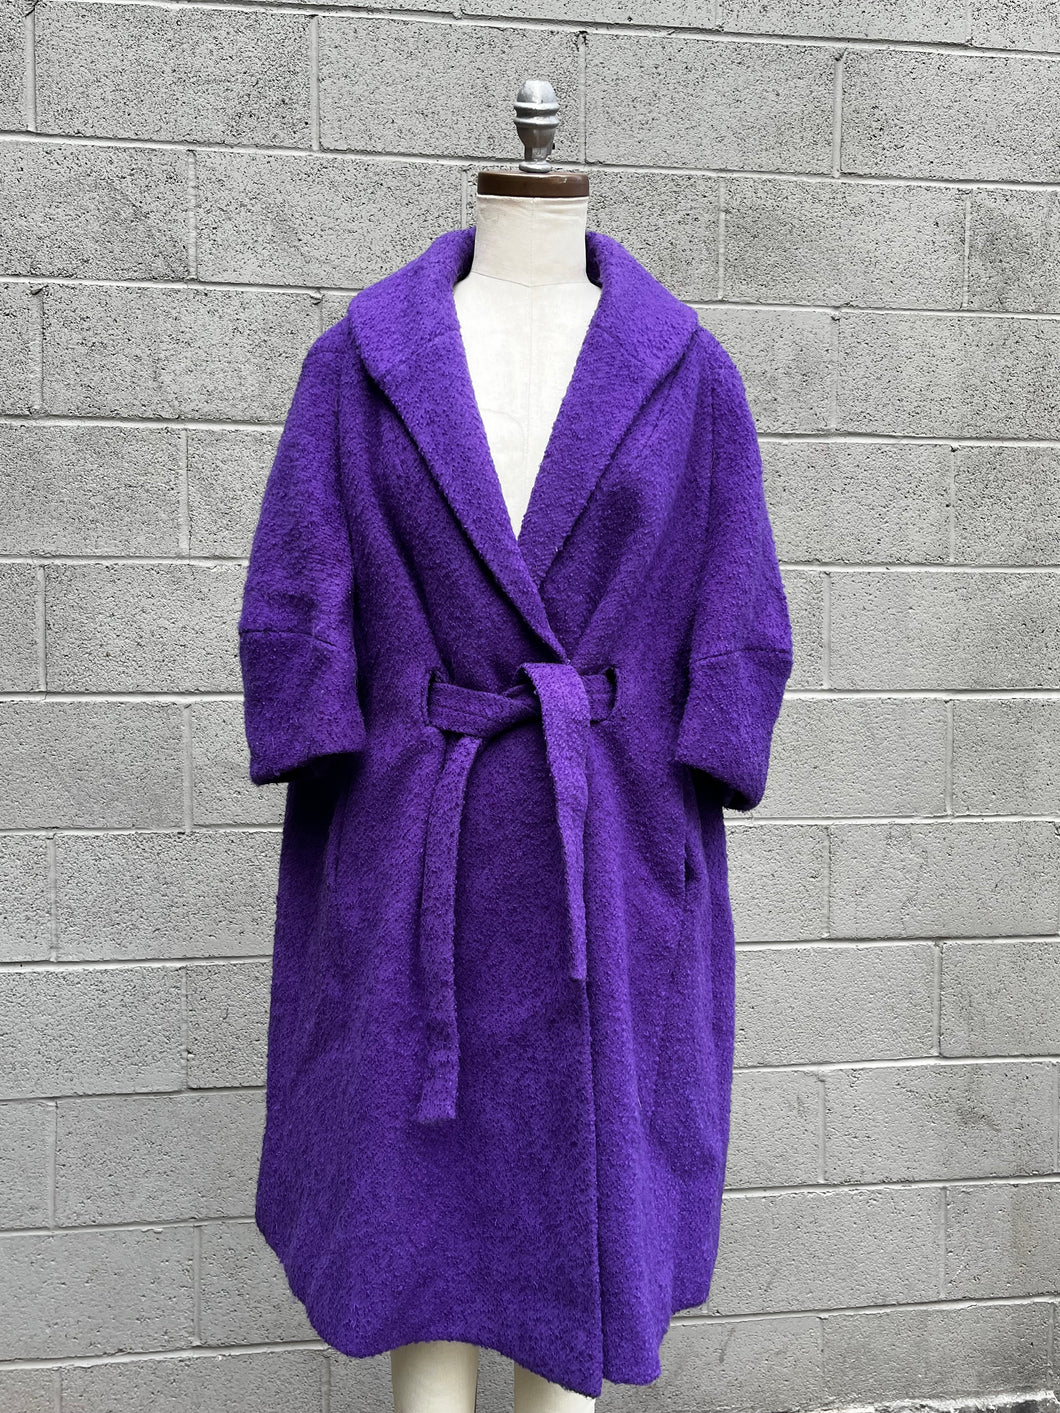 Royal purple curly knit wool swing coat by Petluck’s